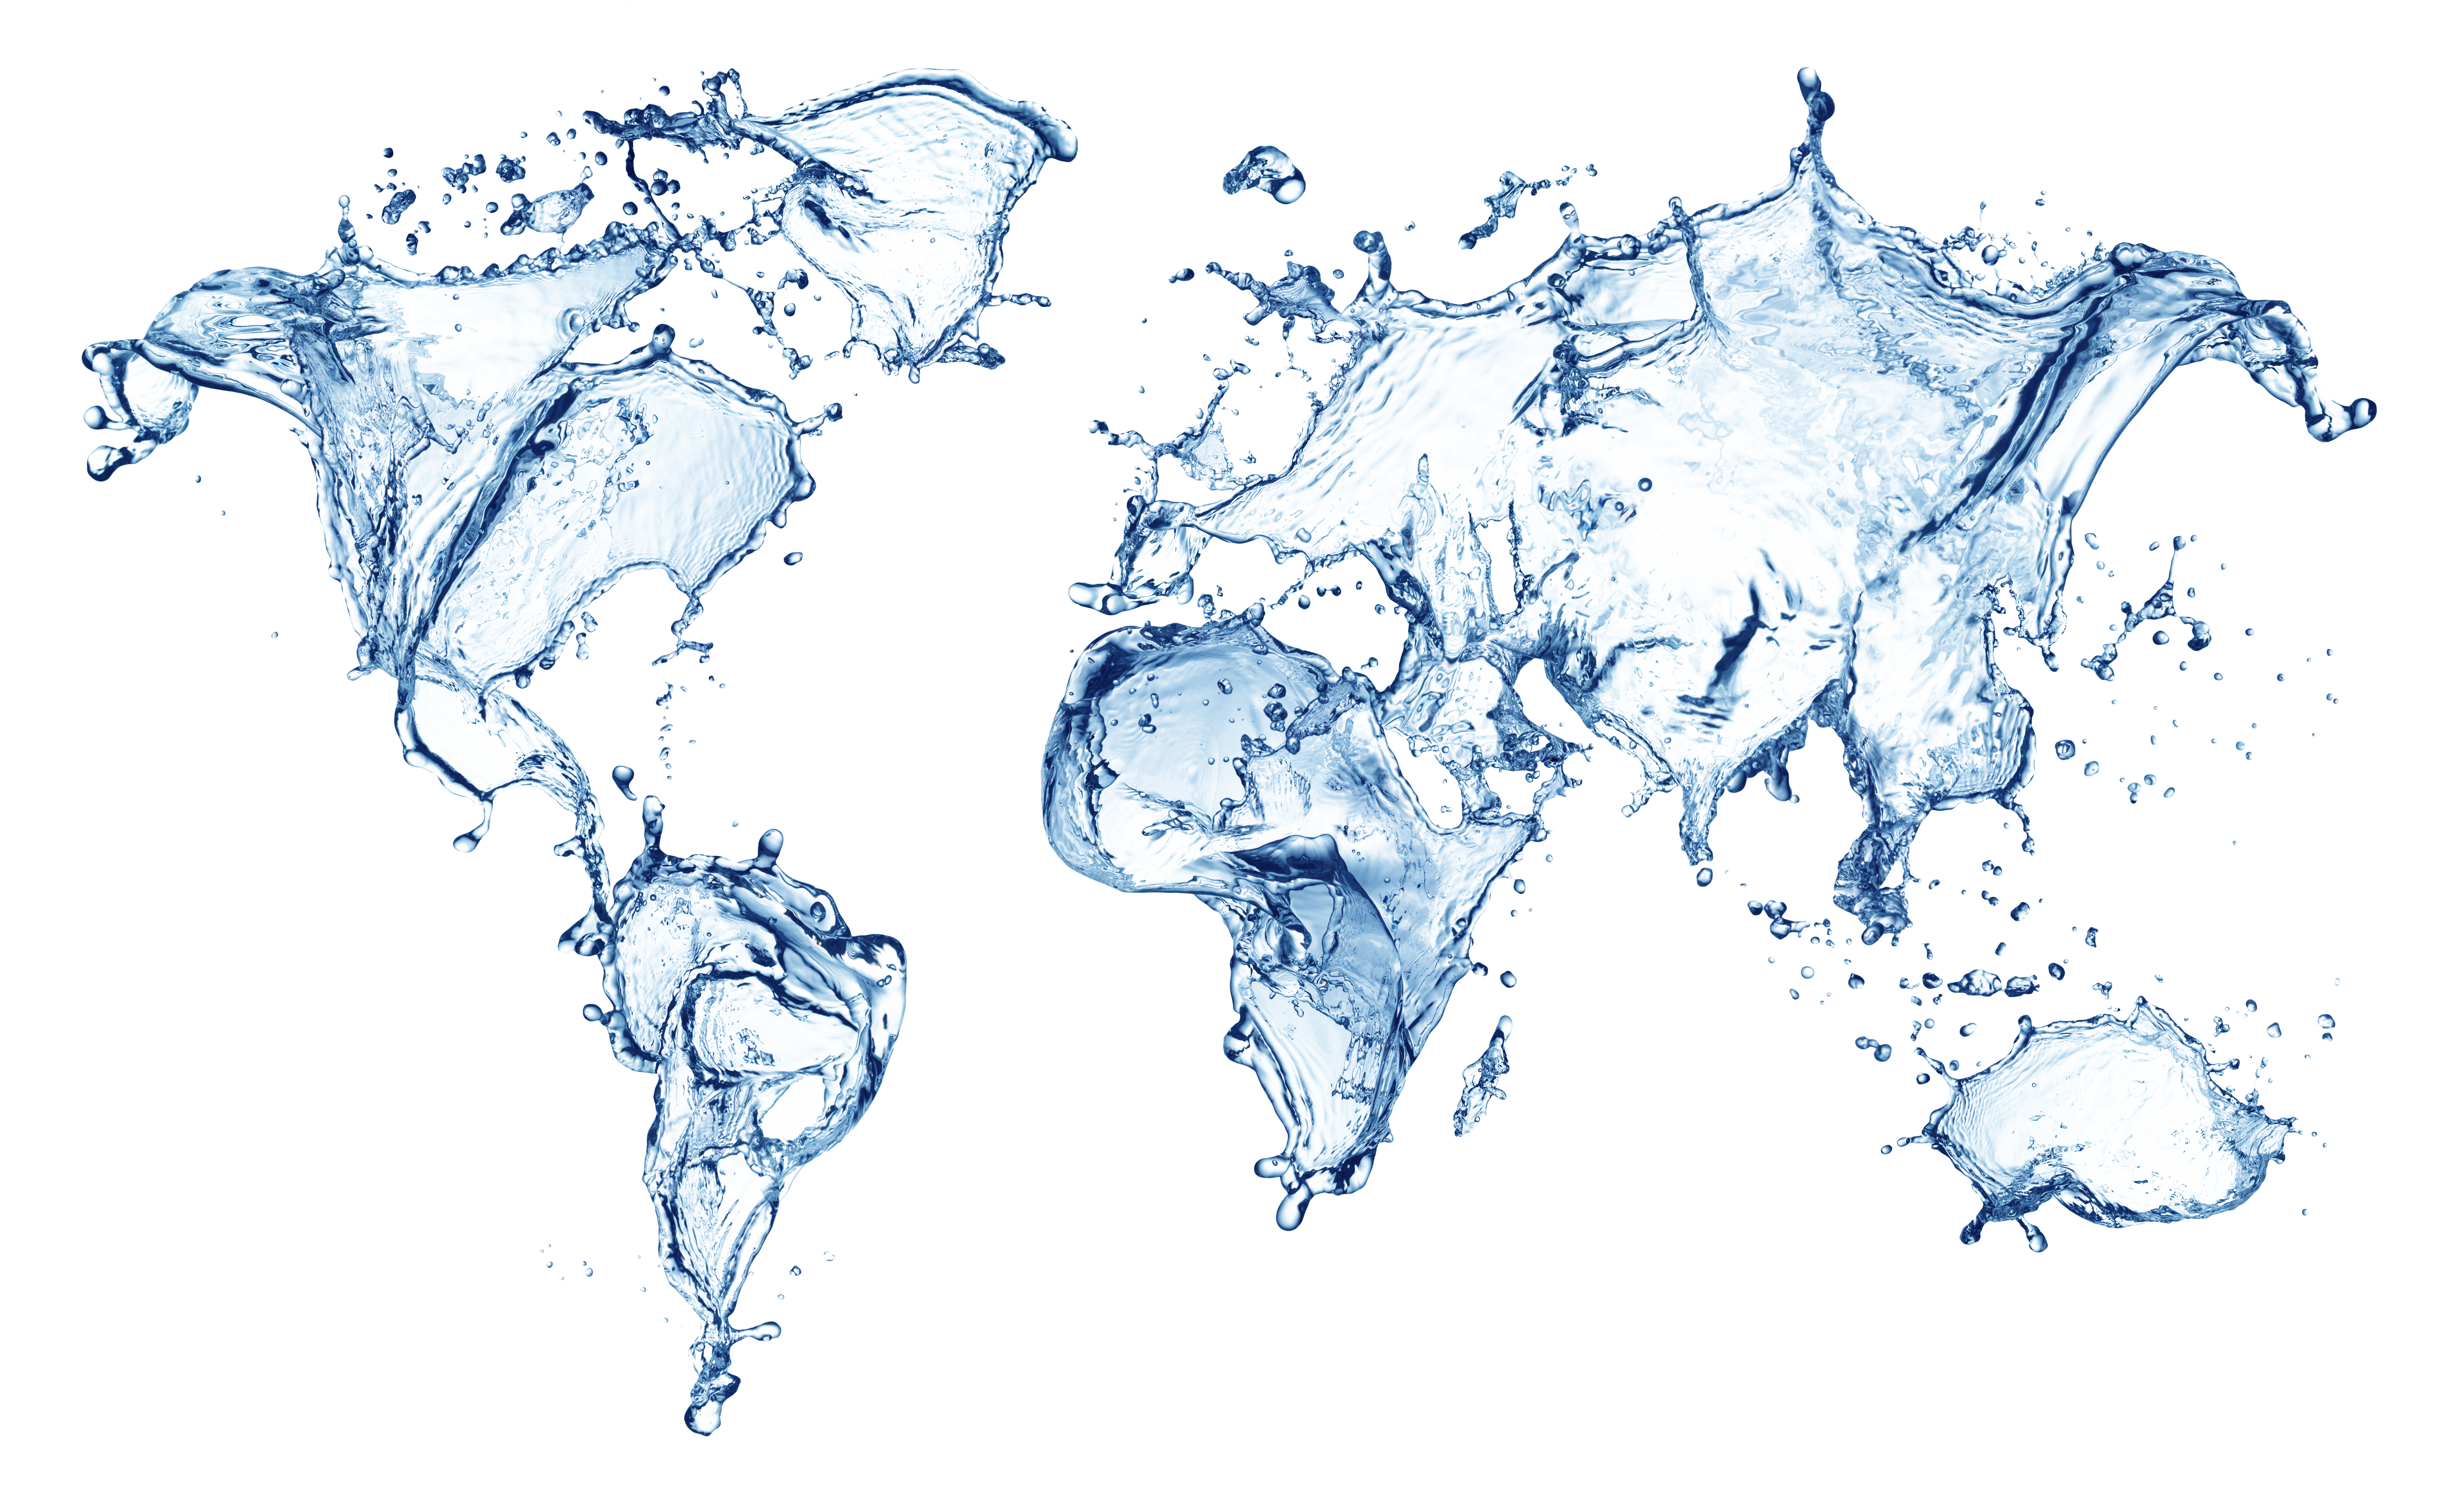 Percikan air dalam bentuk peta dunia